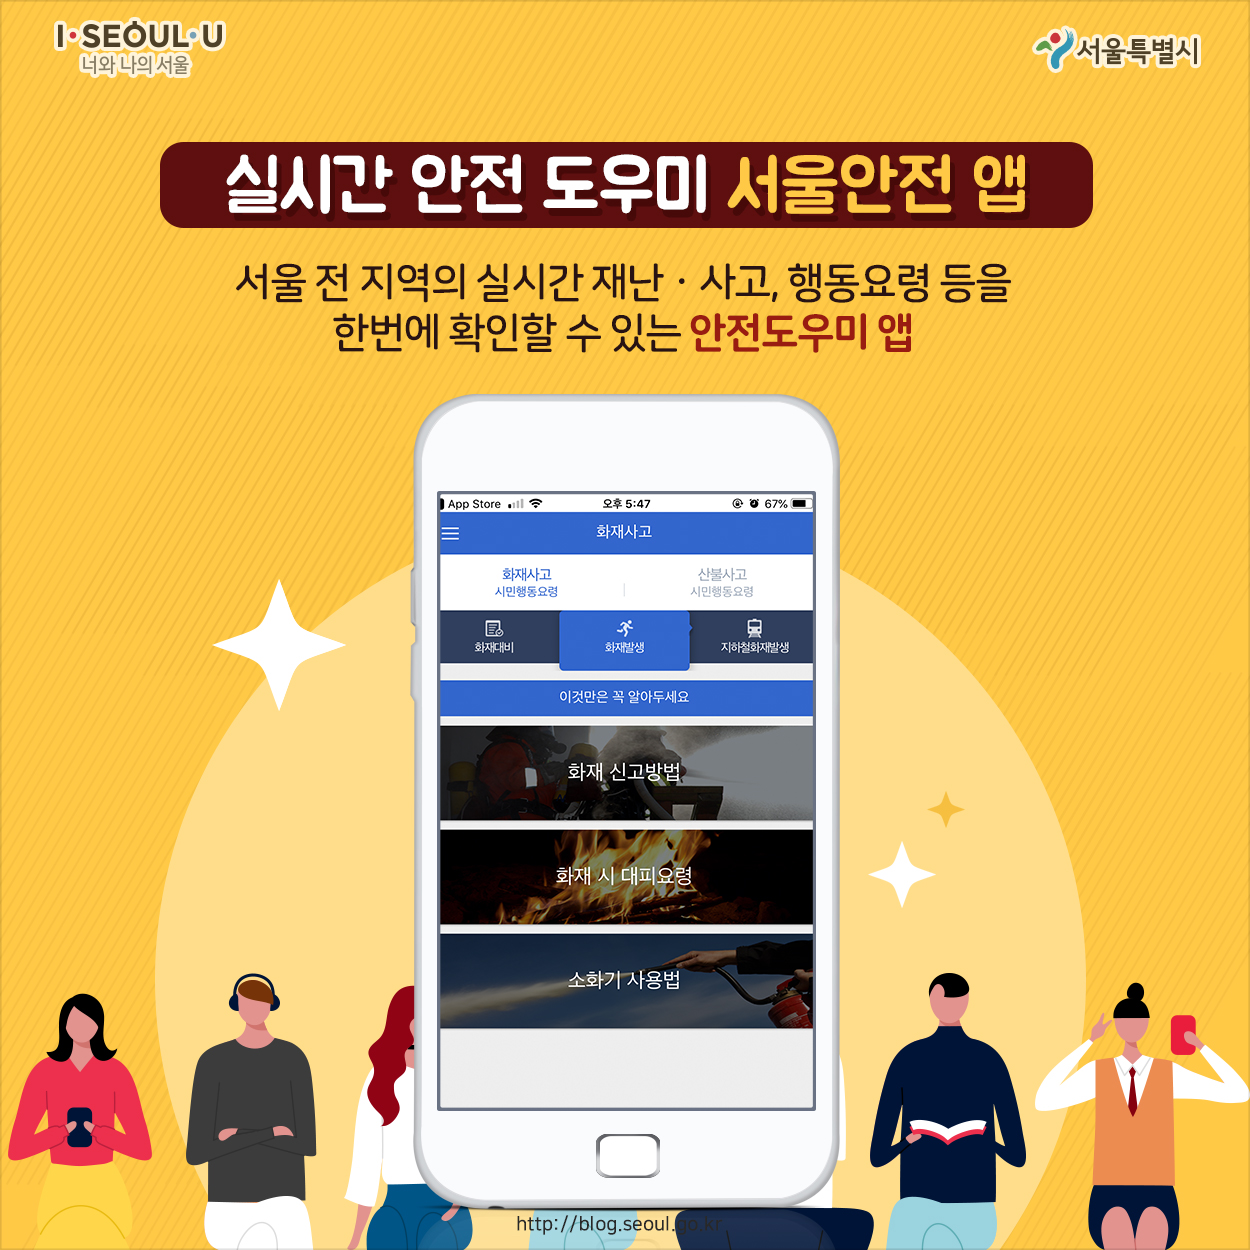 # 실시간 안전 도우미 서울안전 앱 서울 전 지역의 실시간 재난·사고, 행동요령 등을 한번에 확인할 수 있는 안전도우미 앱